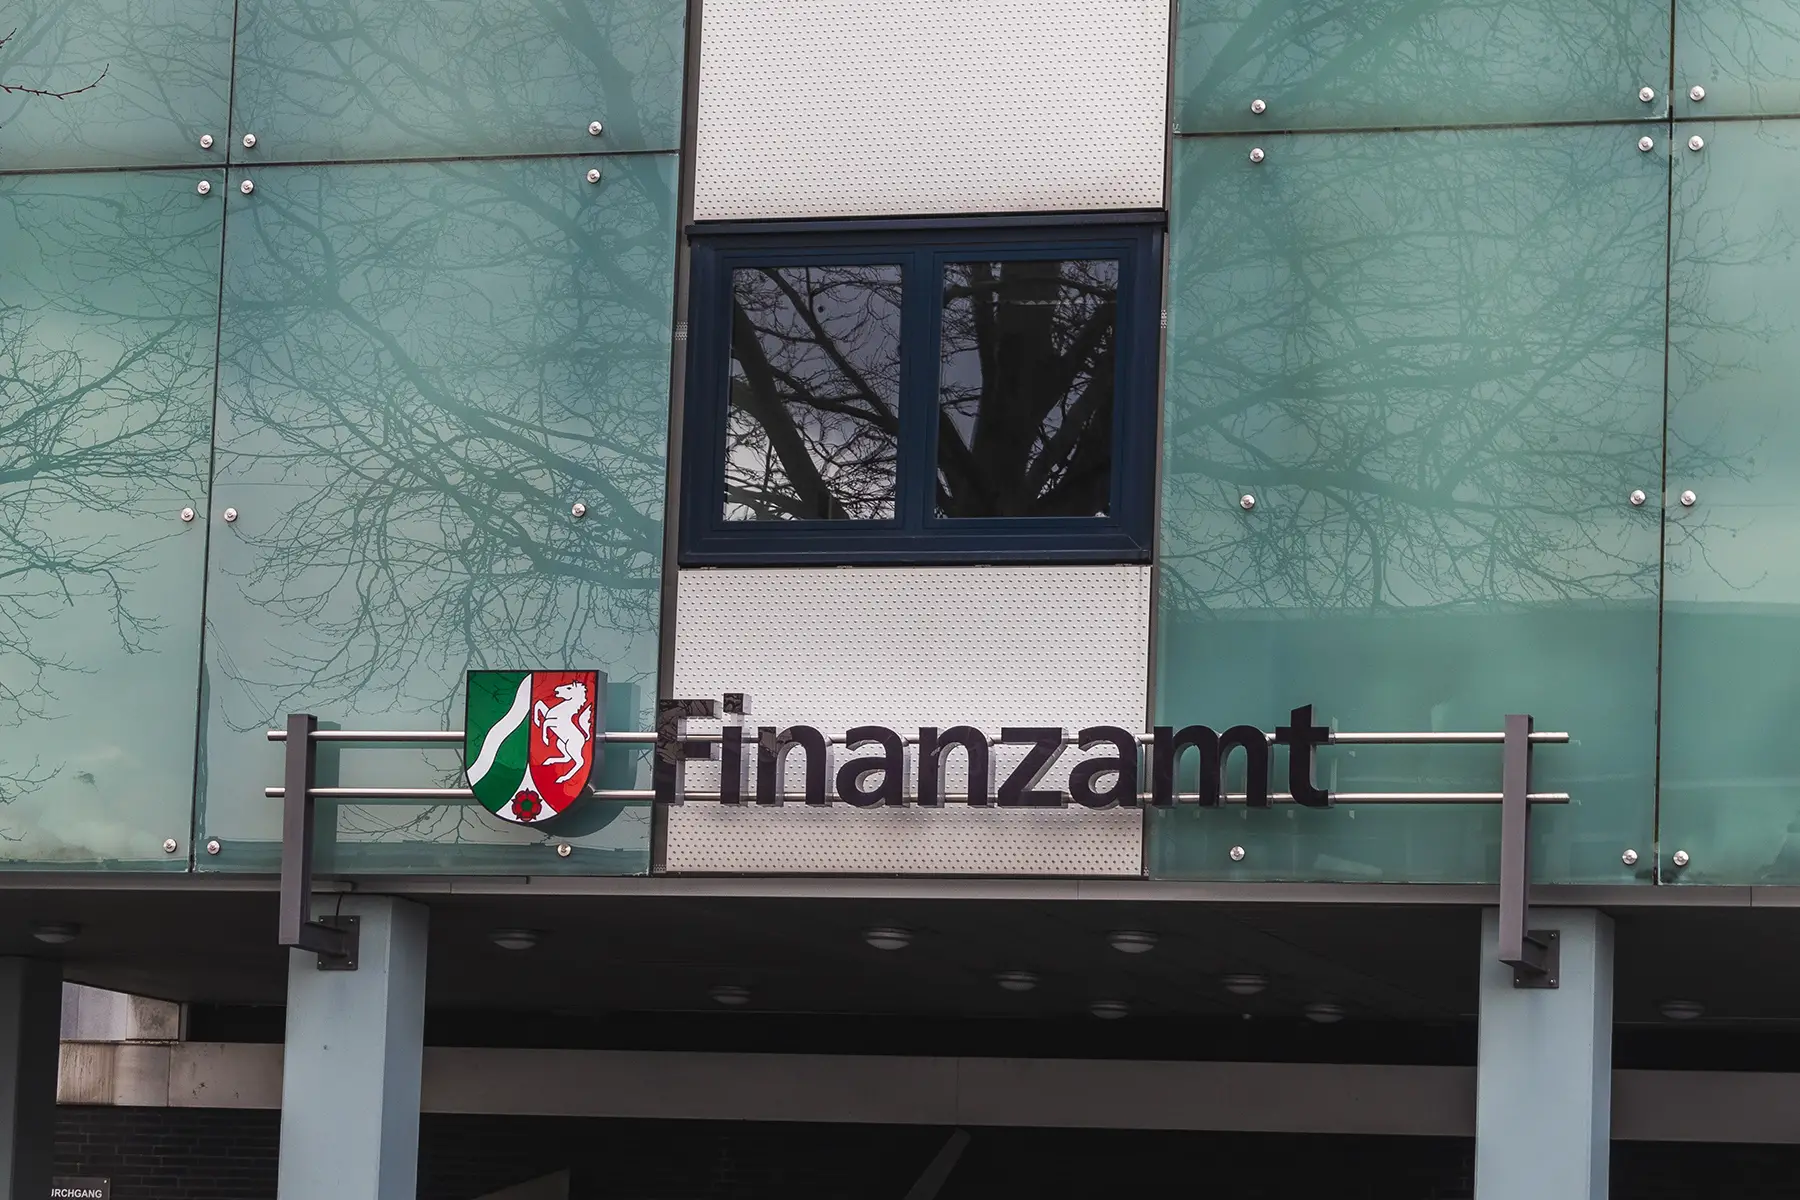 Finanzamt office entrance in Paderborn